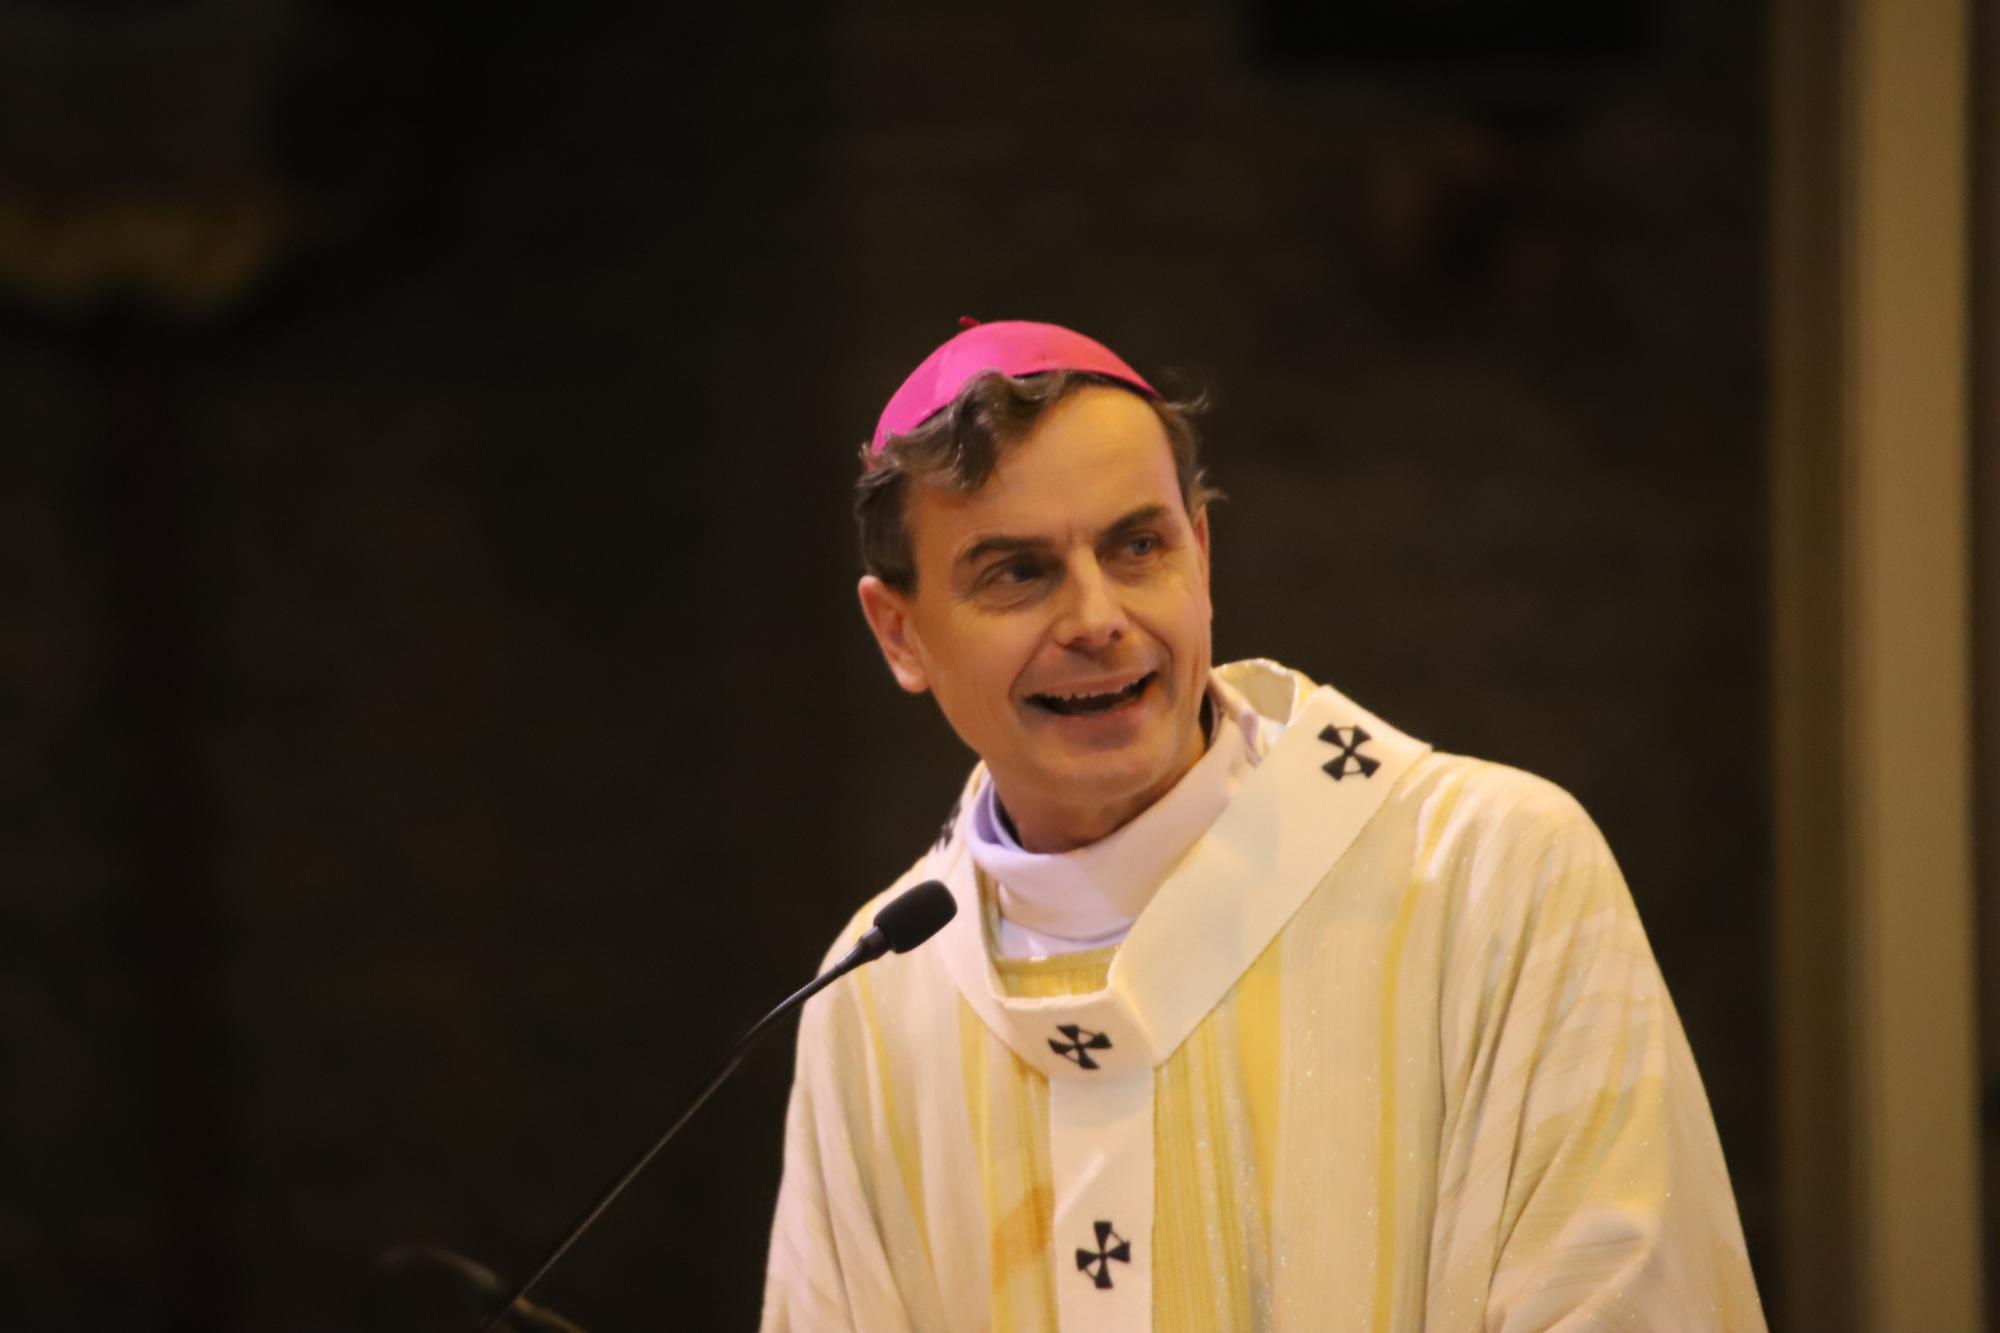 Aartsbisschop Luc Terlinden dankt namens de geloofsgemeenschap van het aartsbisdom zijn voorganger kardinaal De Kesel